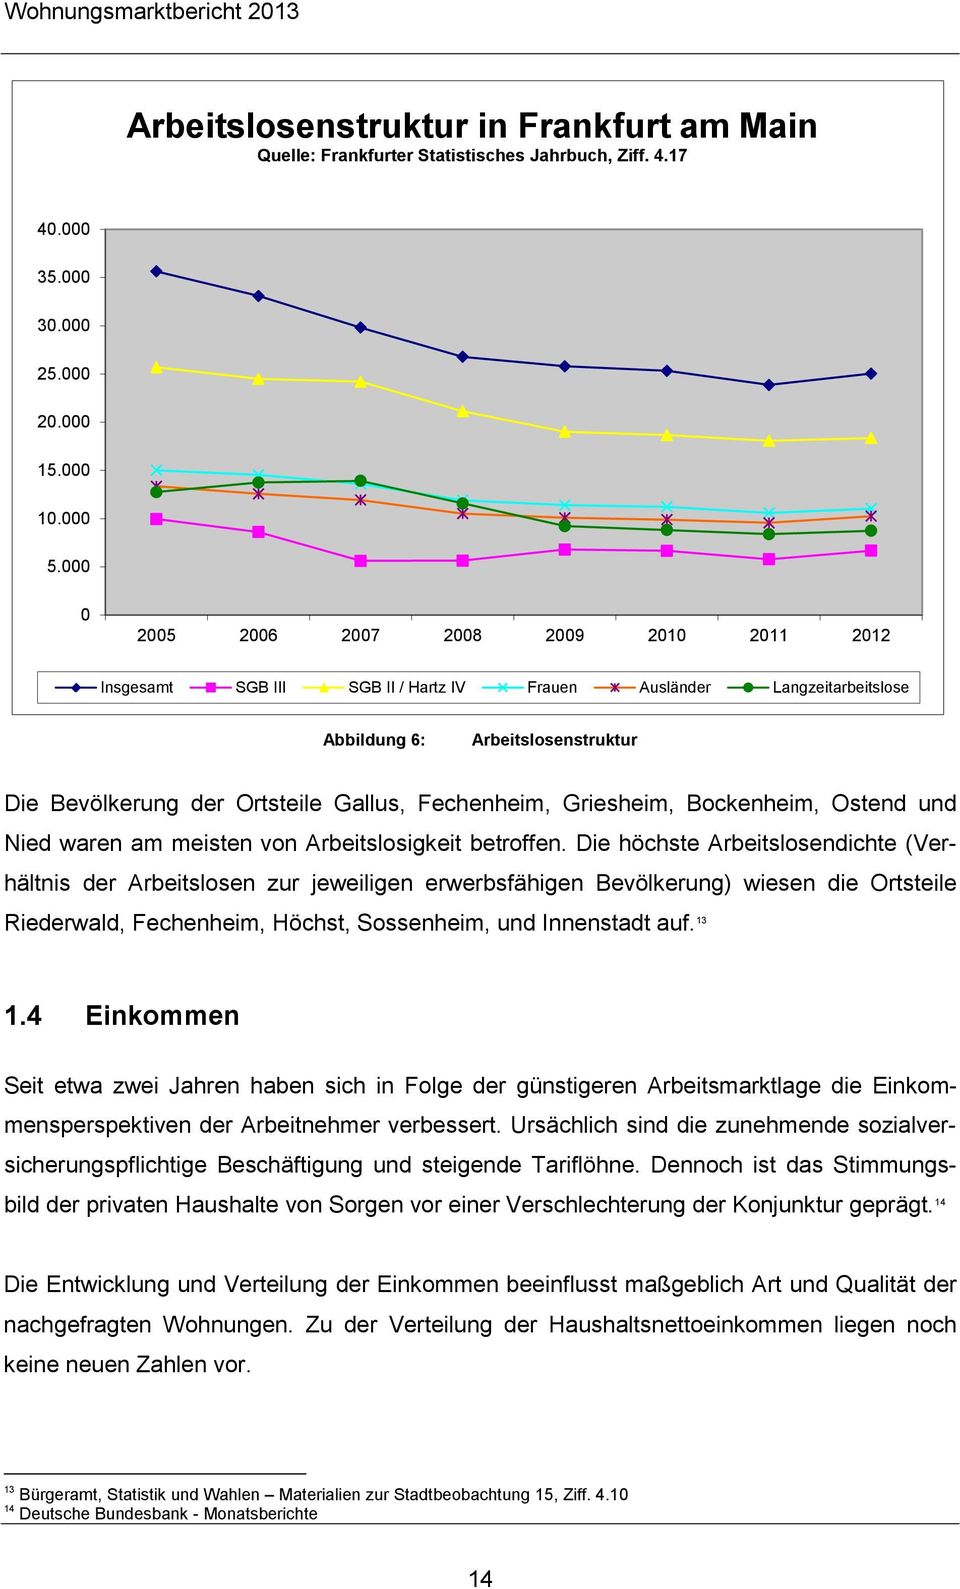 Fechenheim, Griesheim, Bockenheim, Ostend und Nied waren am meisten von Arbeitslosigkeit betroffen.